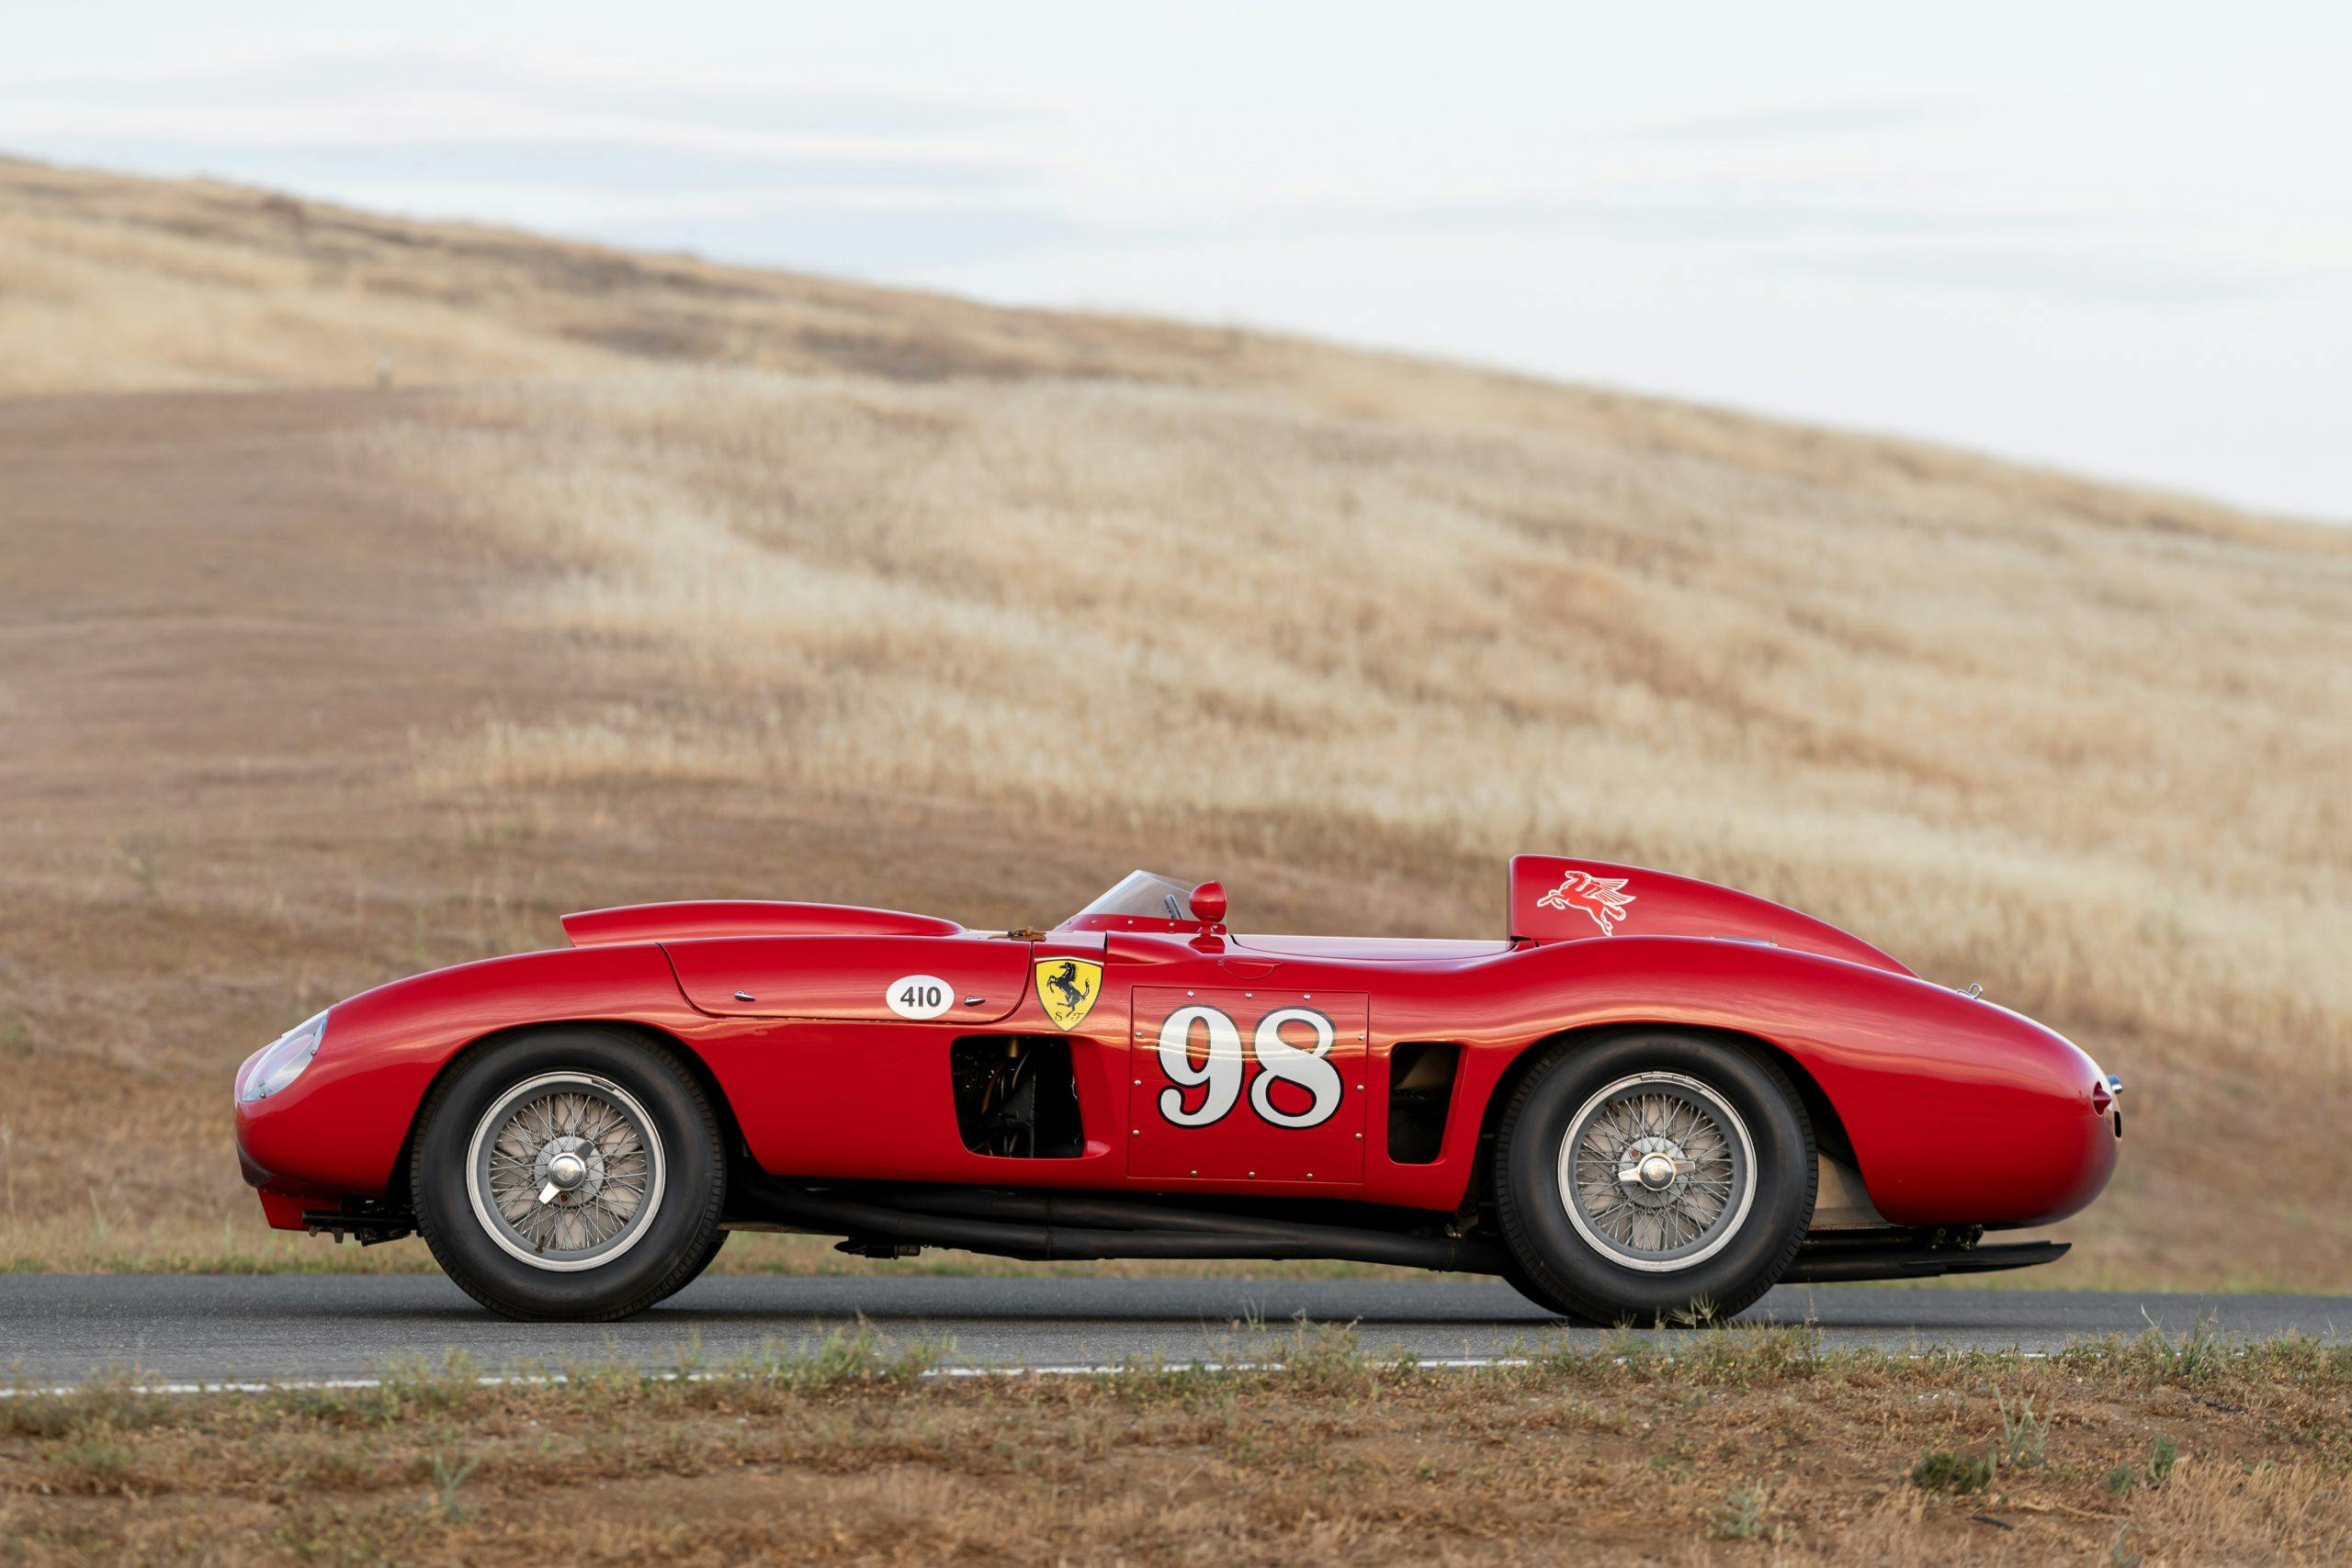 1955 Ferrari 410 Sport Spider side